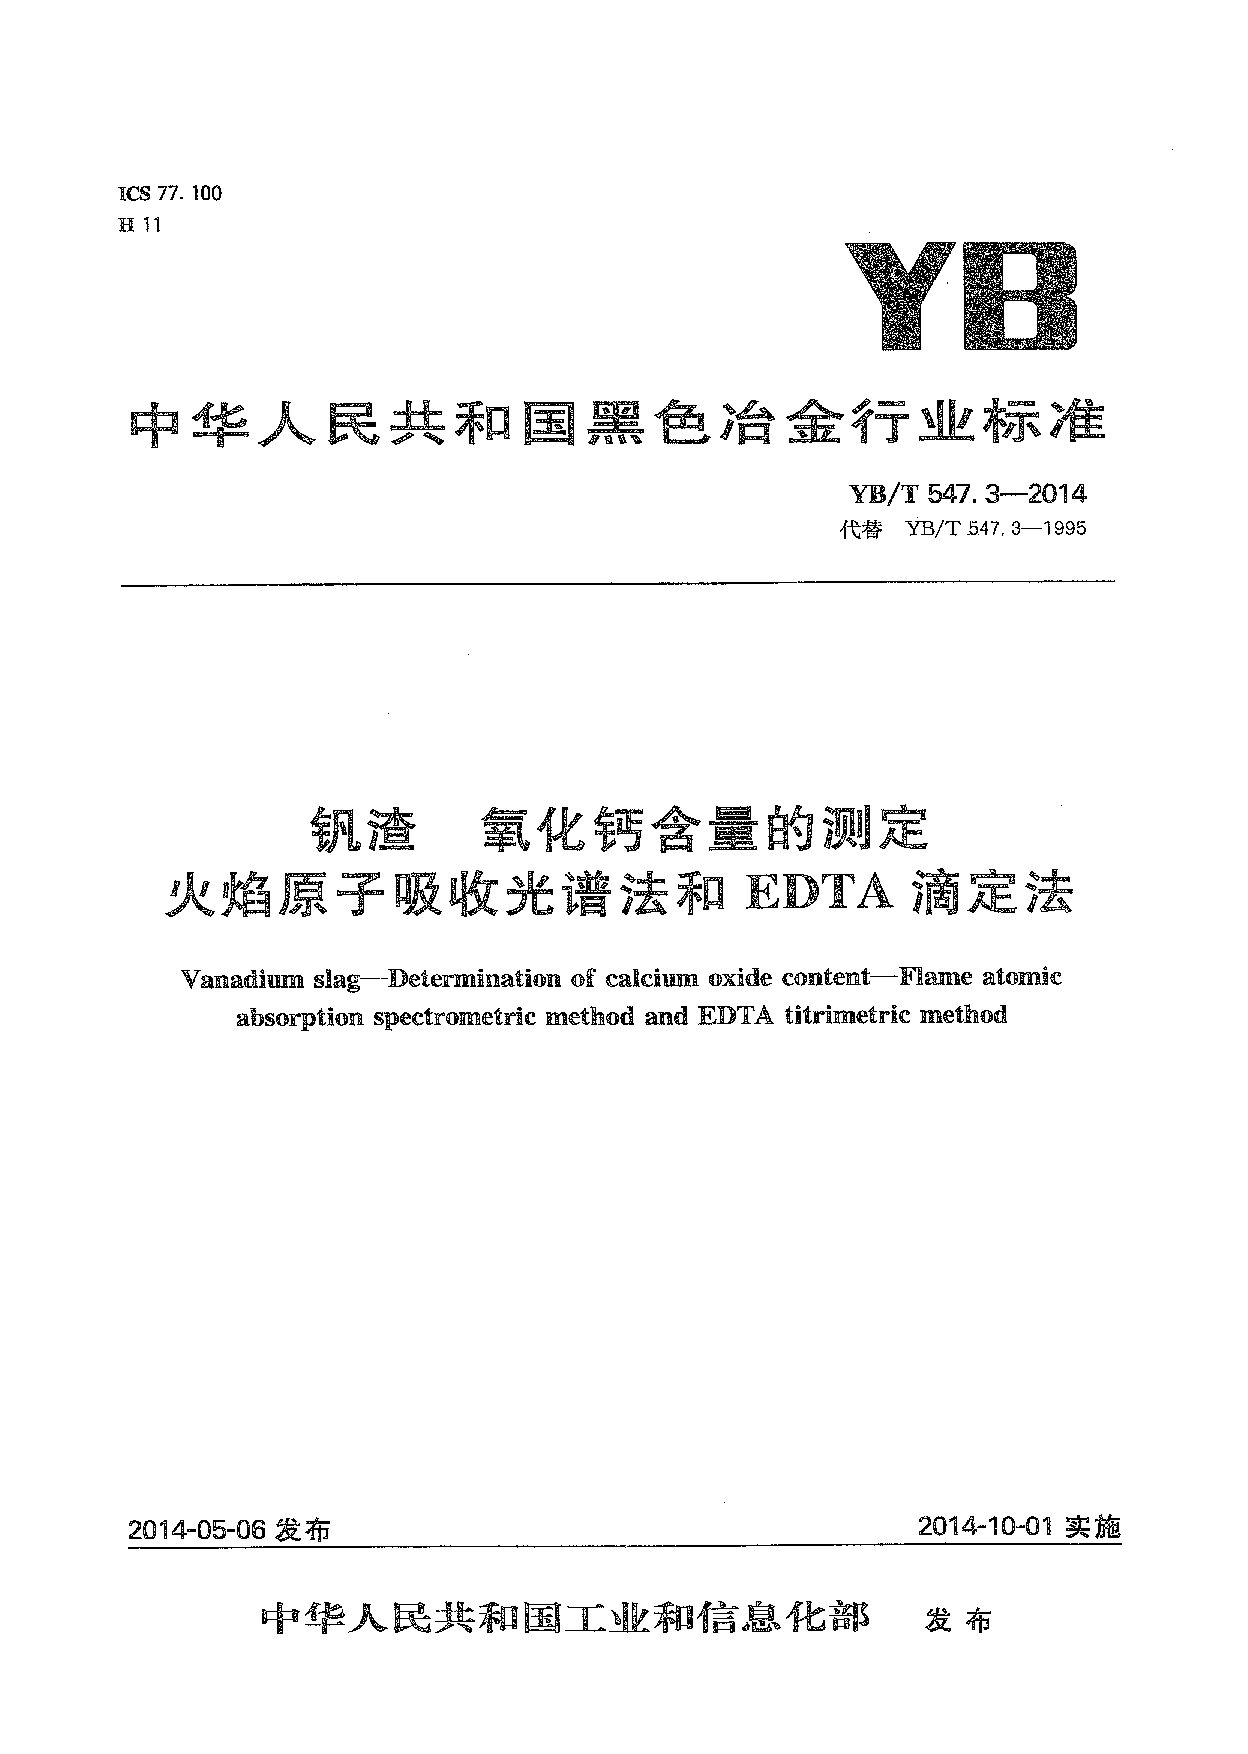 YB/T 547.3-2014封面图